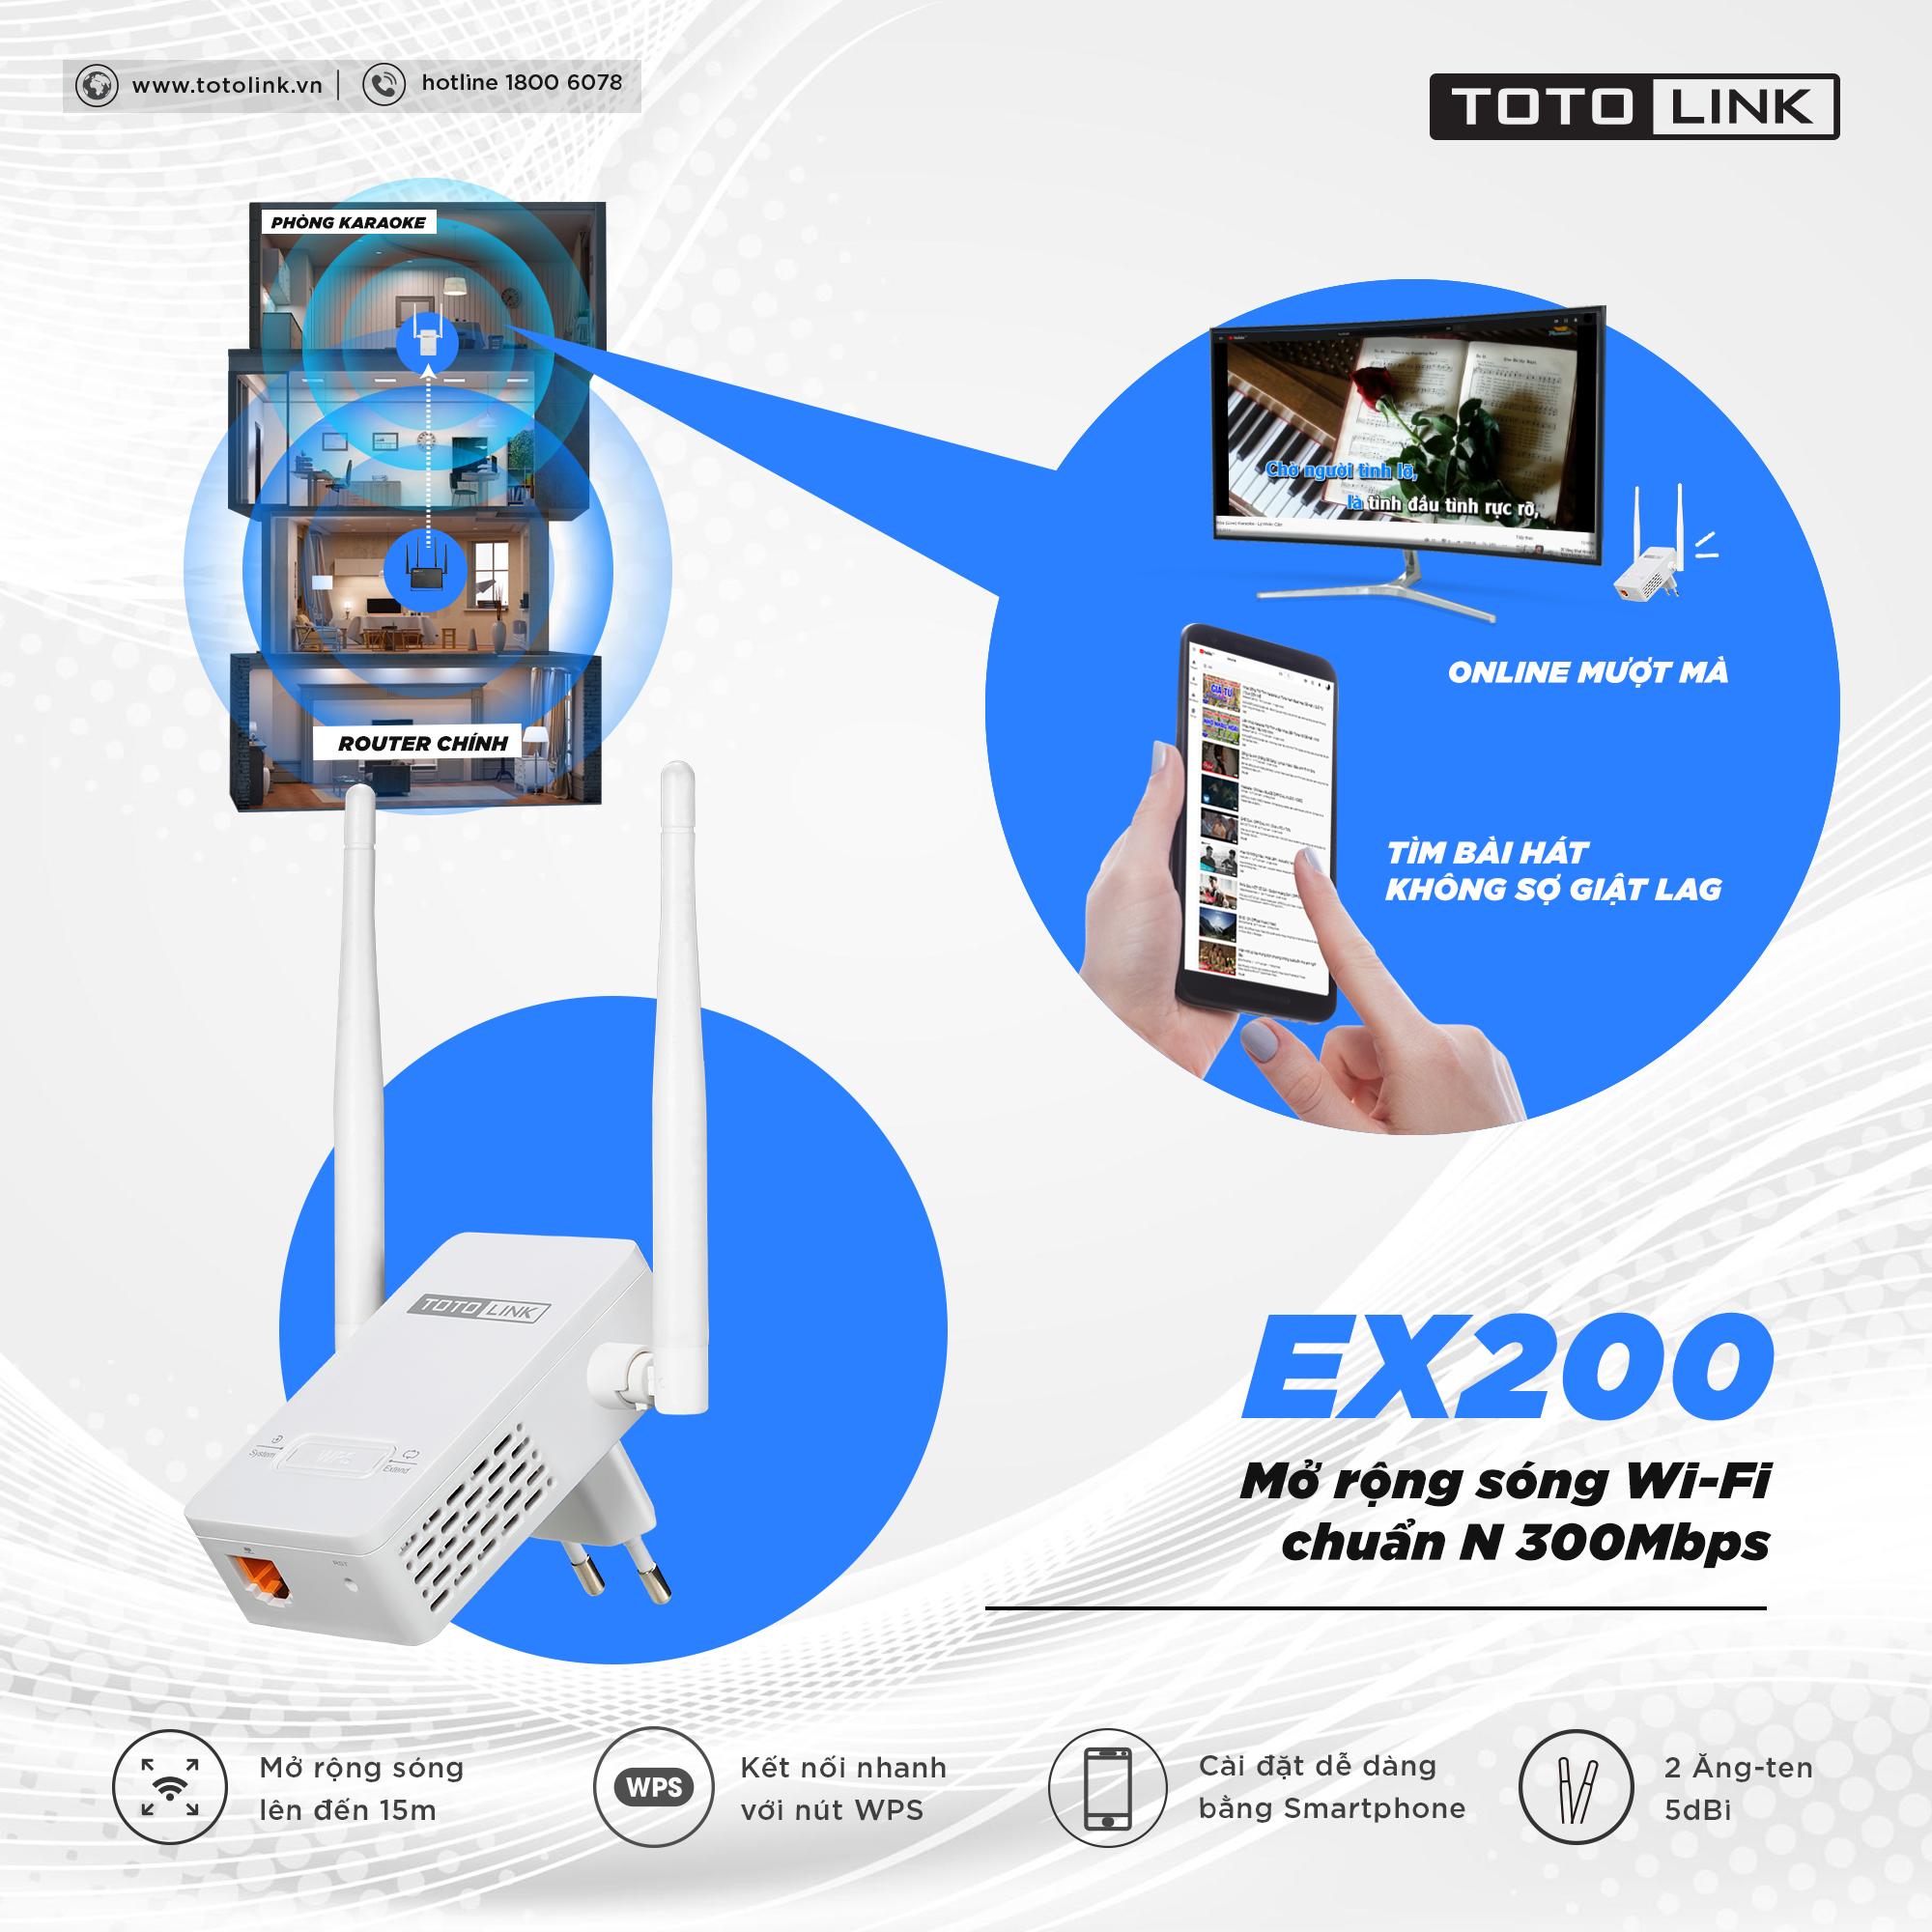 Thiết bị mở rộng sóng WiFi TOTOLINK EX200-V2 nhỏ gọn hiện đại chuẩn N 300Mbps - Hãng phân phối chính...